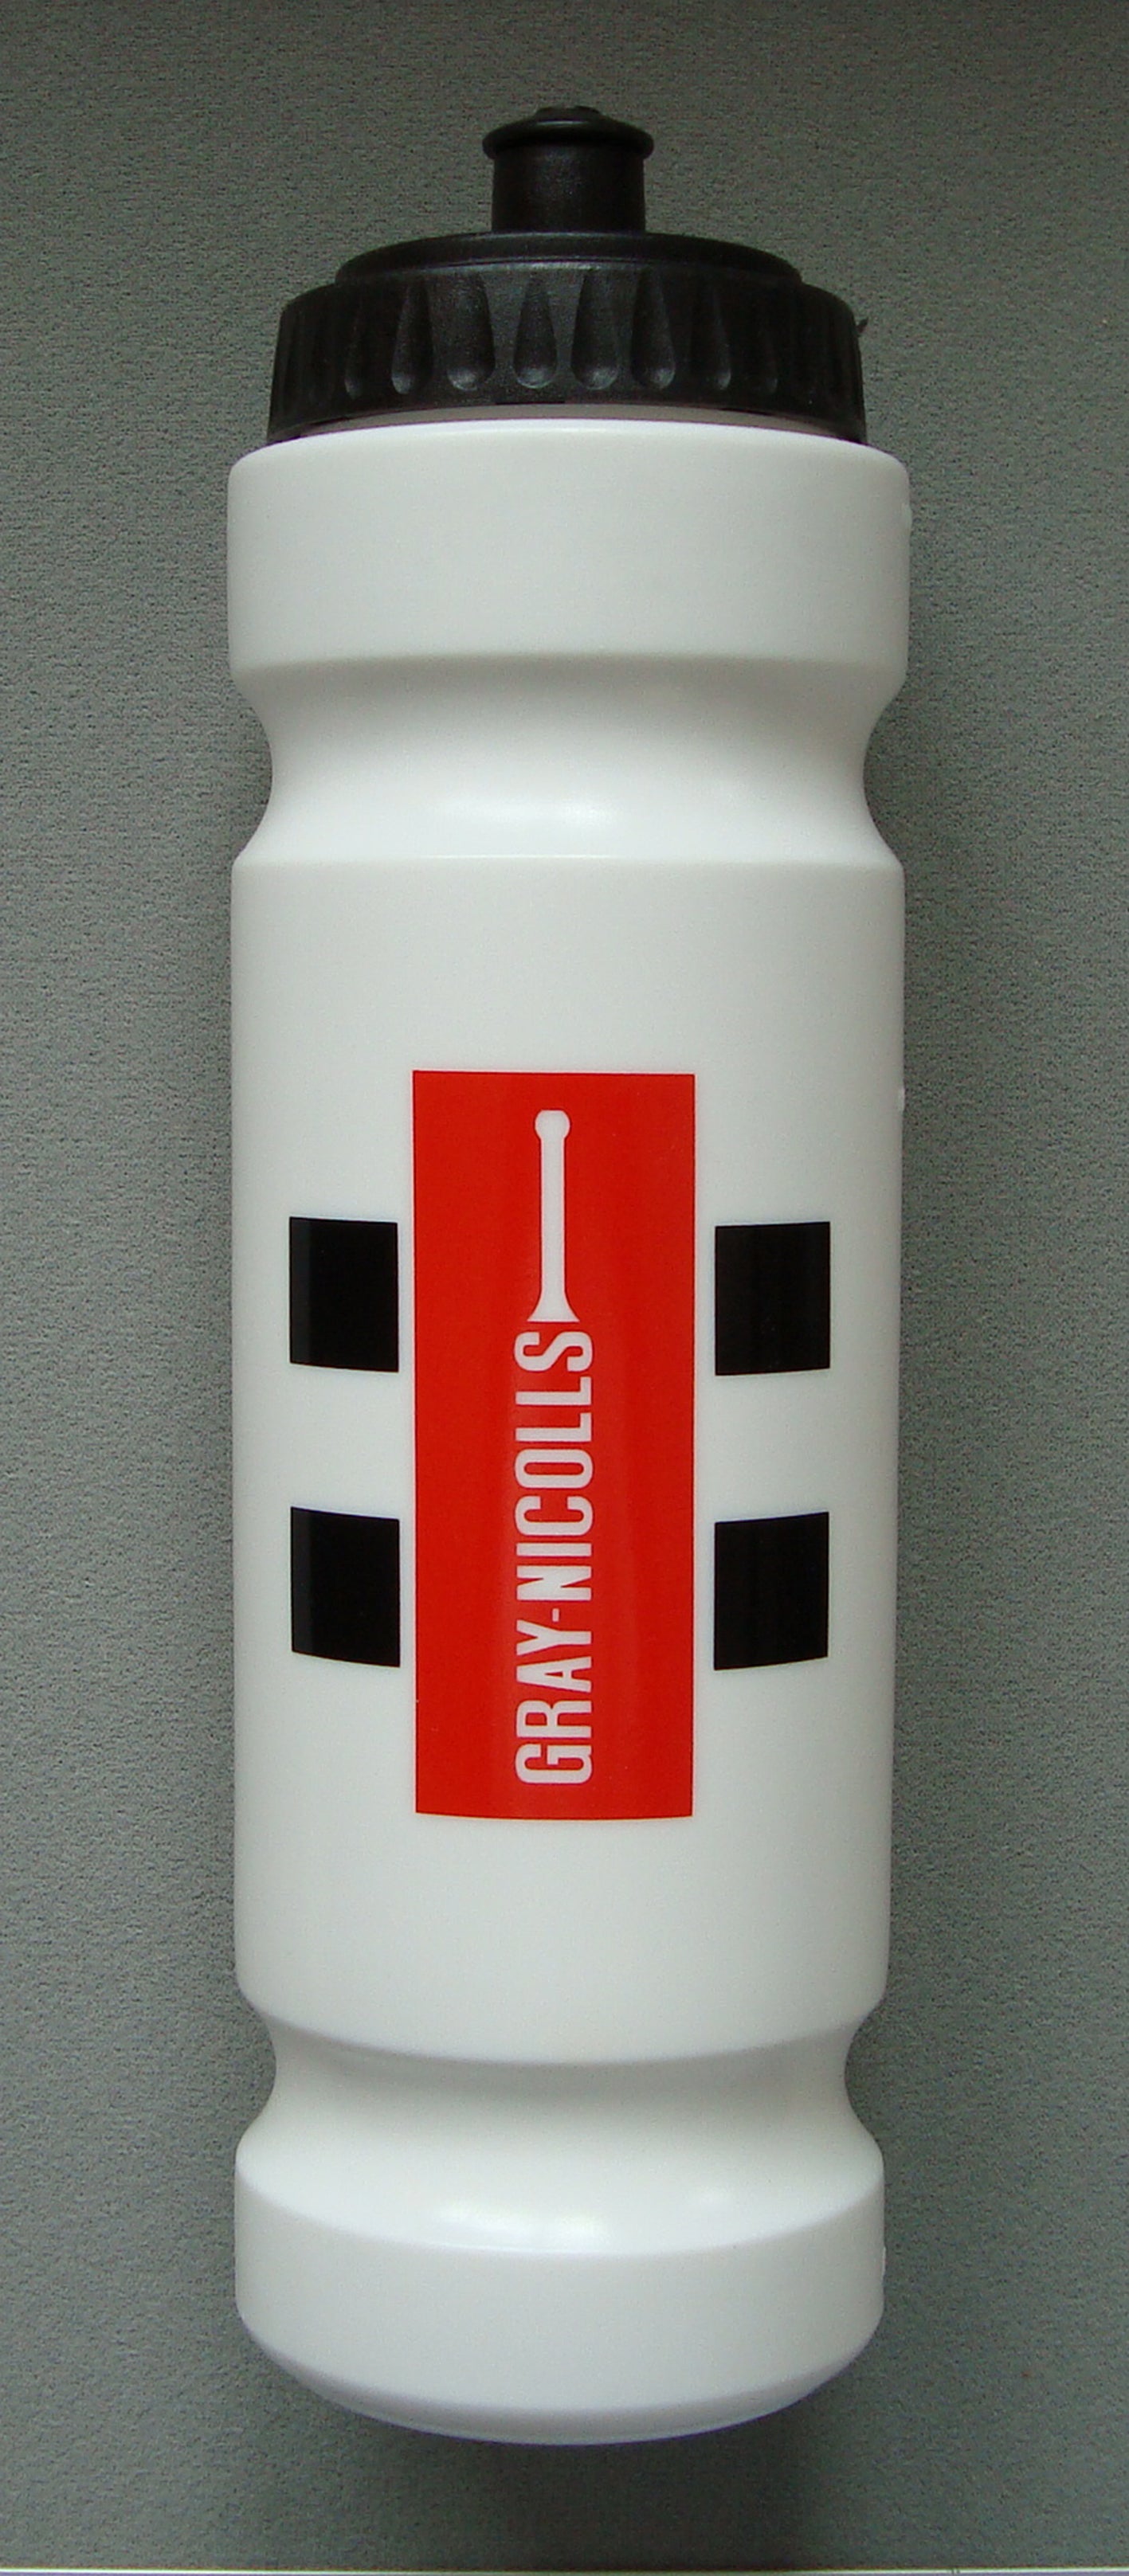 CXEG14TrainingEquipment Water Bottle